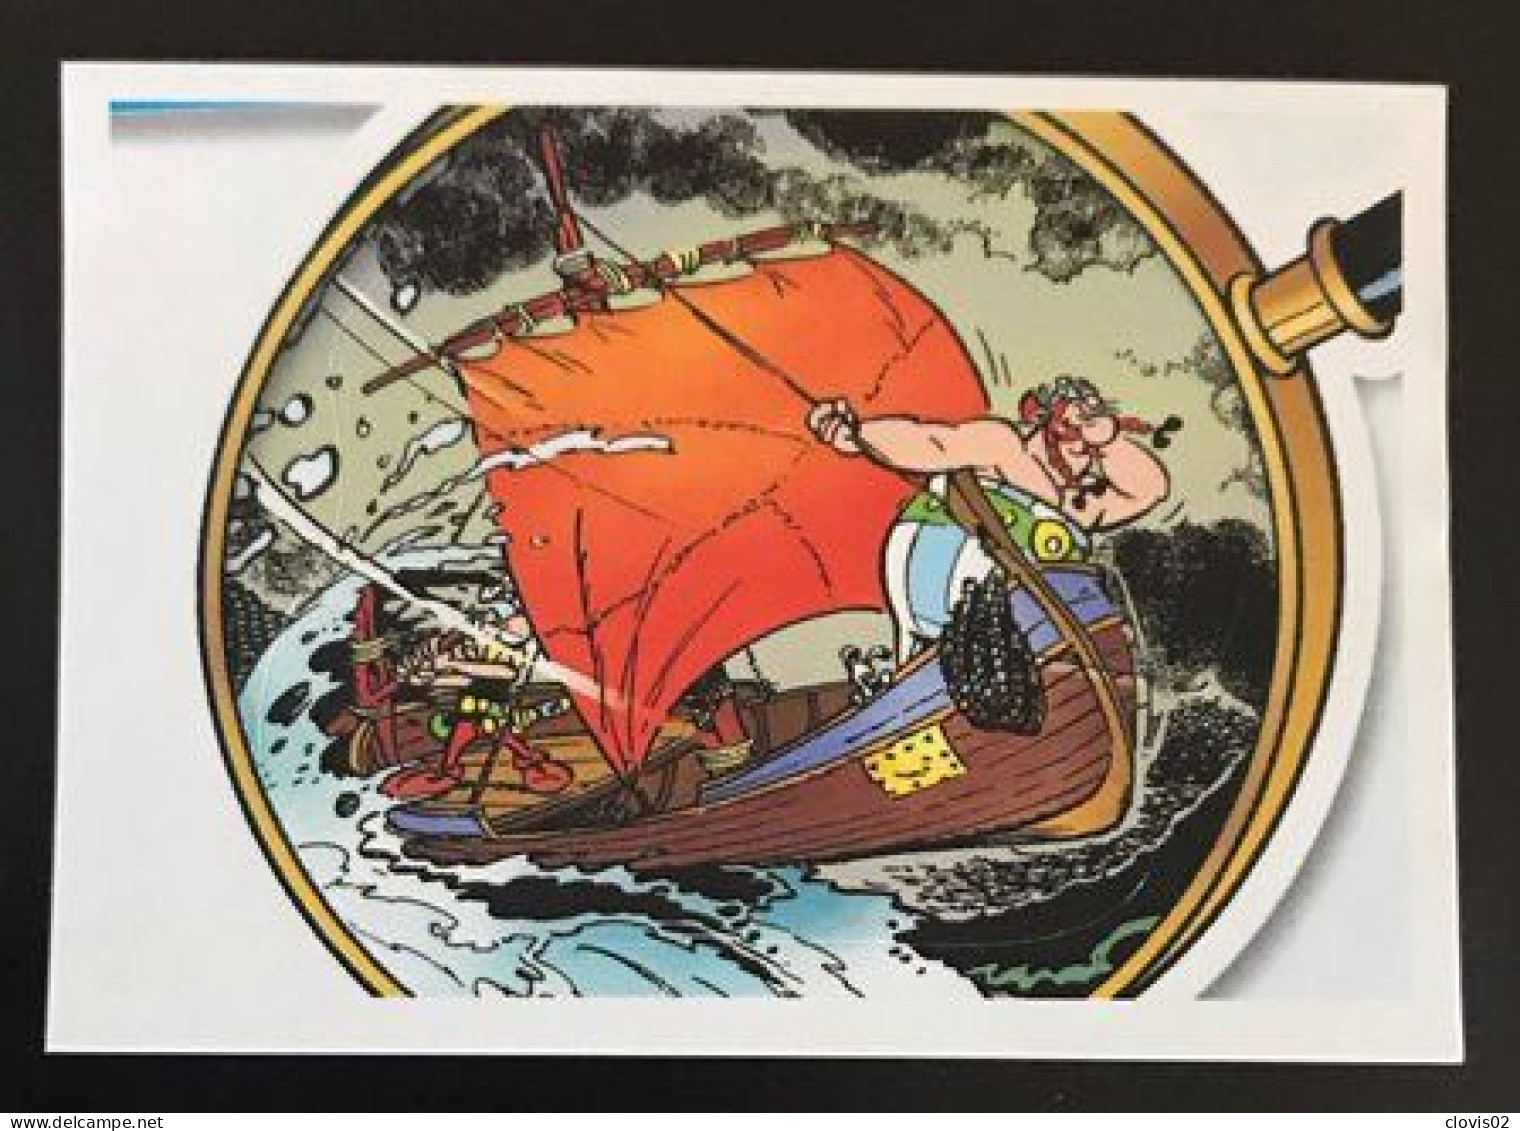 101 - PANINI Family Astérix 60 Ans D'aventures - Carrefour Sticker Vignette - Französische Ausgabe